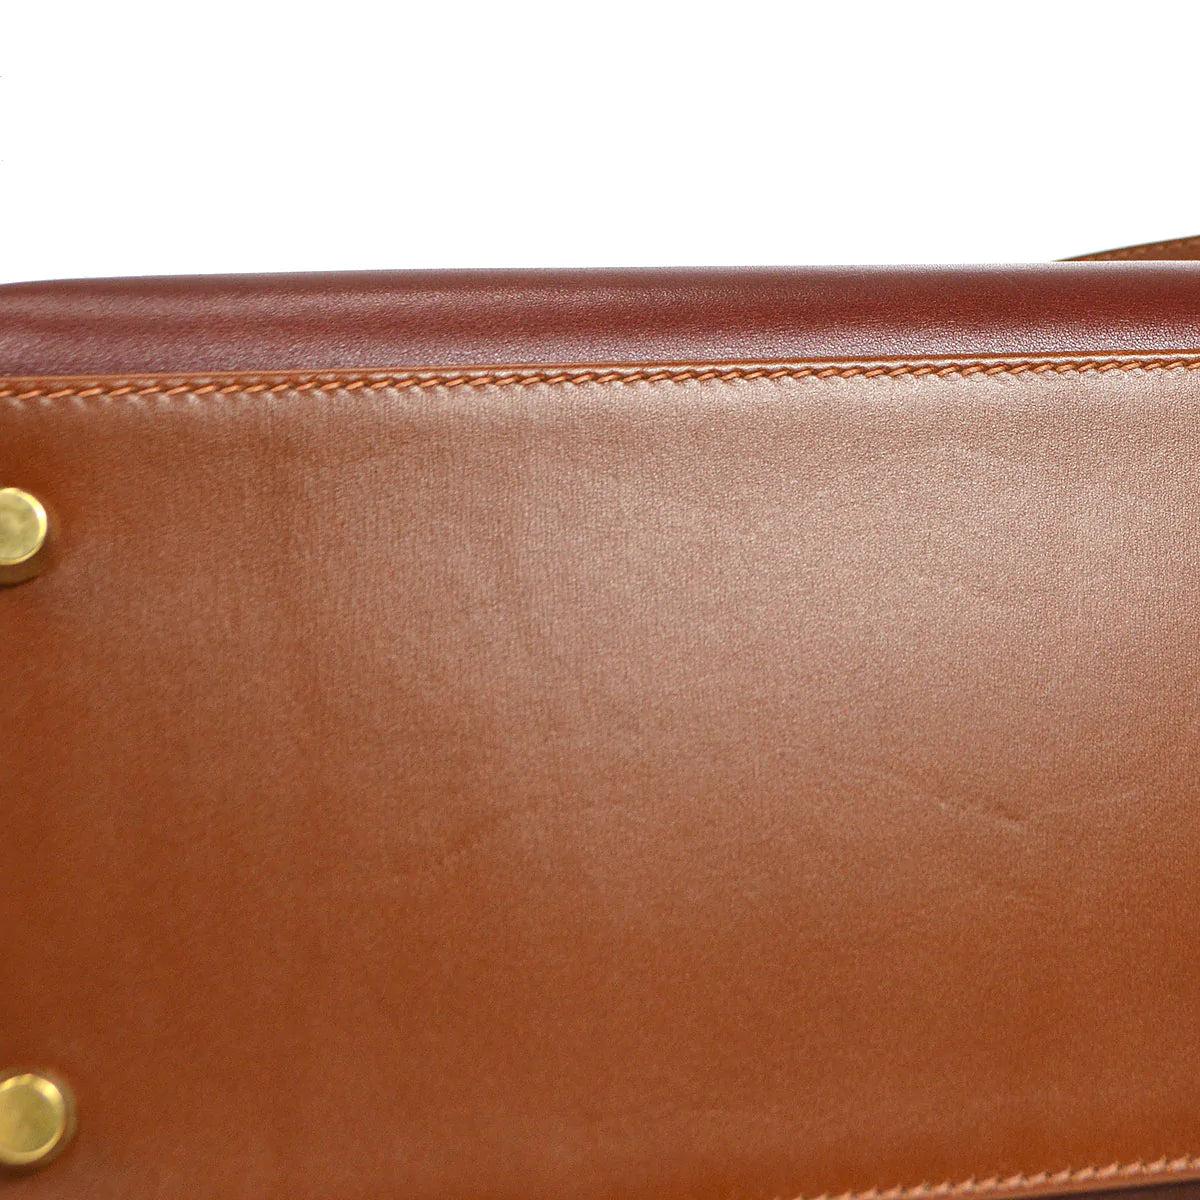 HERMES Kelly 32 Sellier Box Calfskin Leather Gold Top Handle Shoulder Bag 2